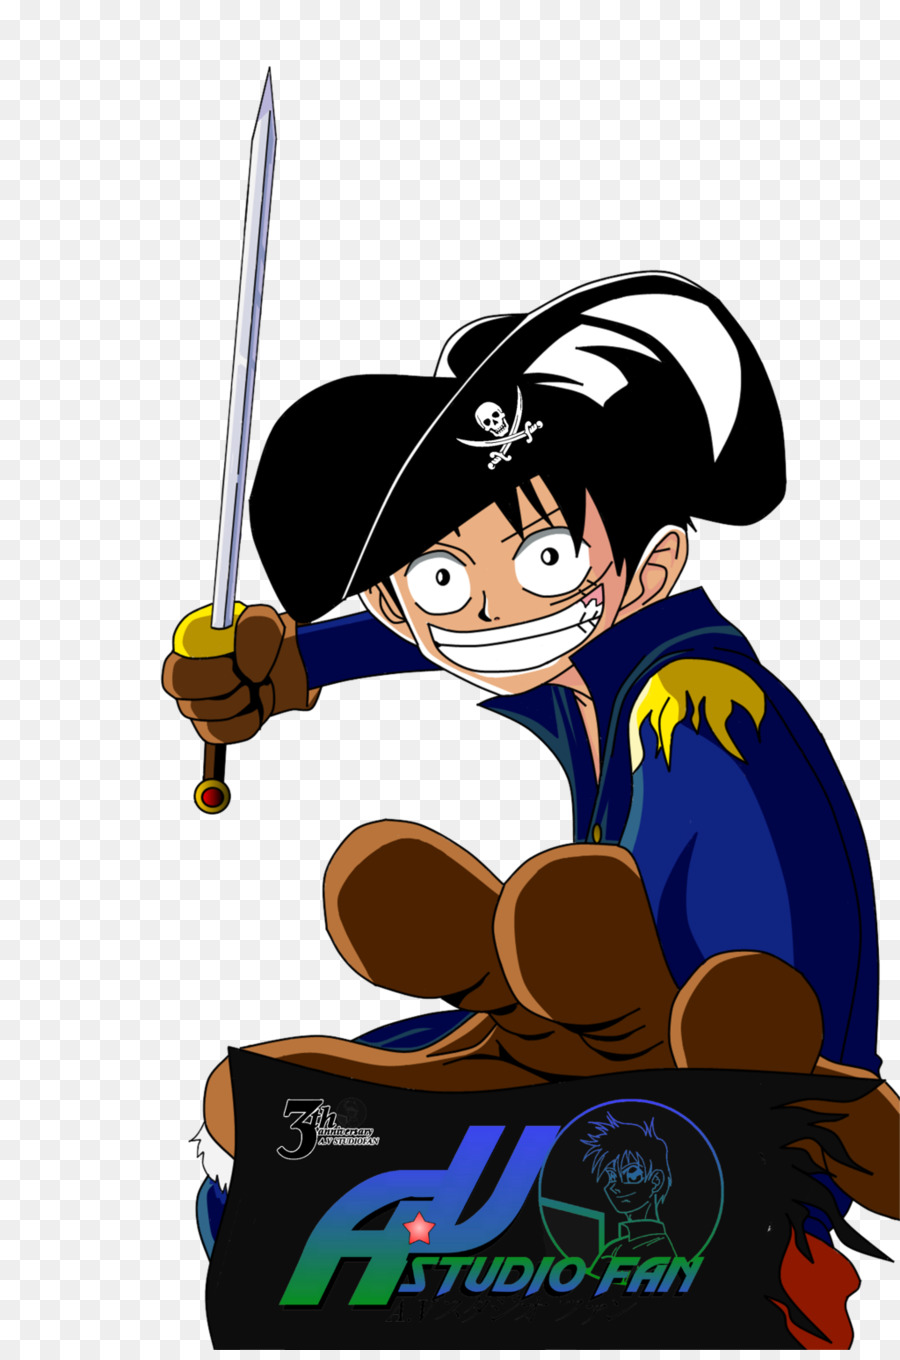 Monkey D. Luffy Edward Newgate Roronoa Zoro One Piece Straw Hat Pirates,  Chapeu Palha transparent background PNG clipart